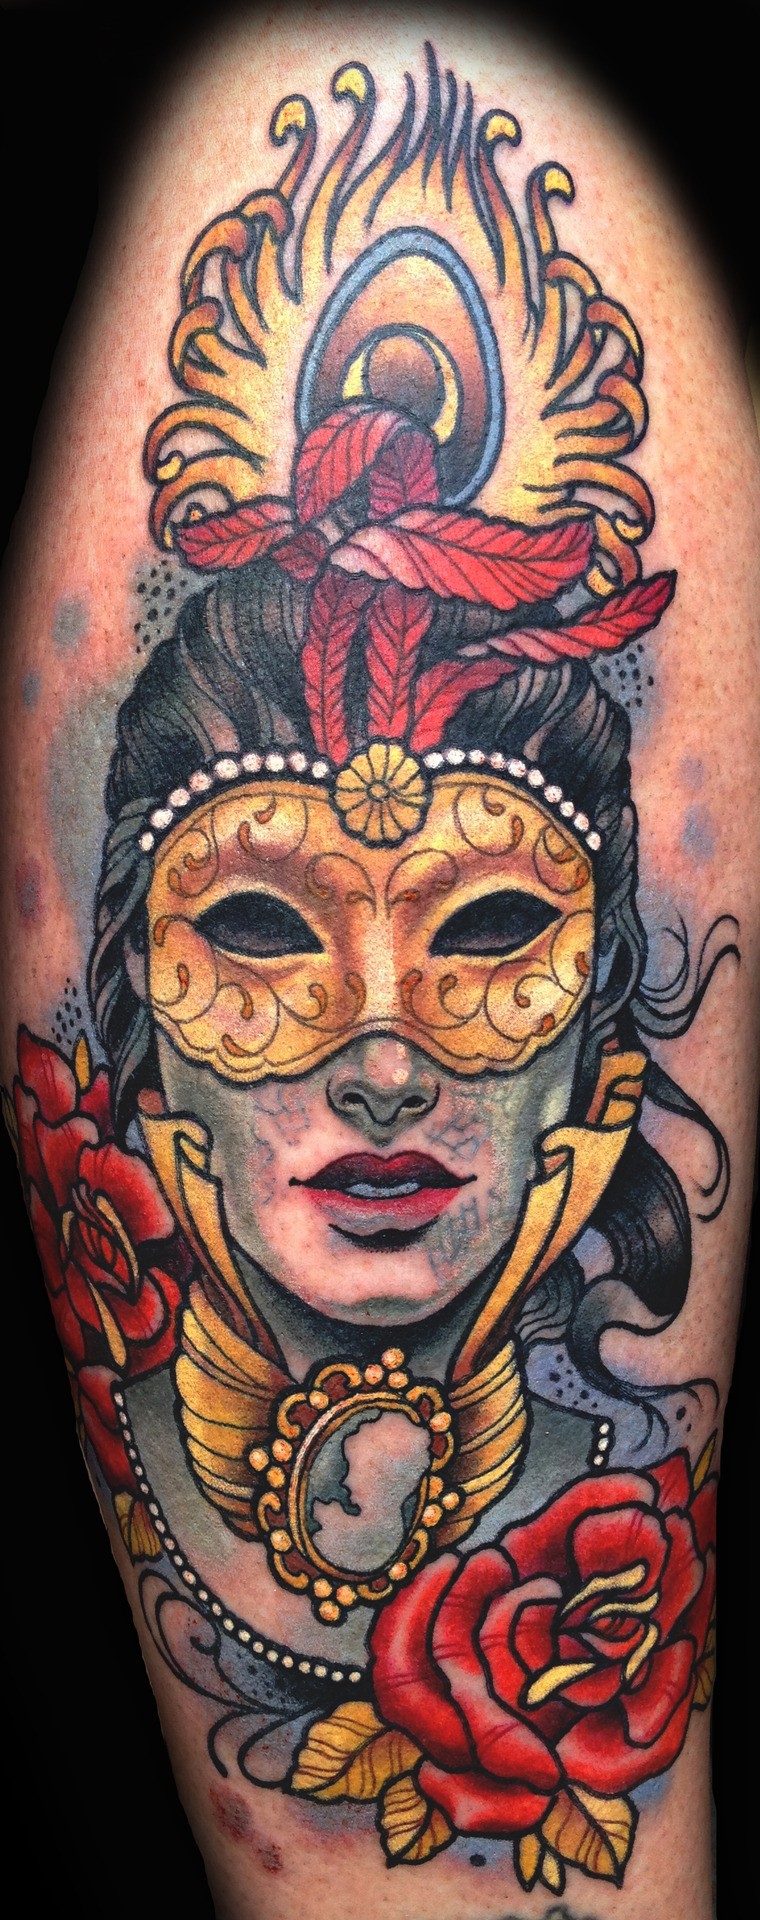 大臂带面具和羽毛的神秘女郎彩色纹身图案